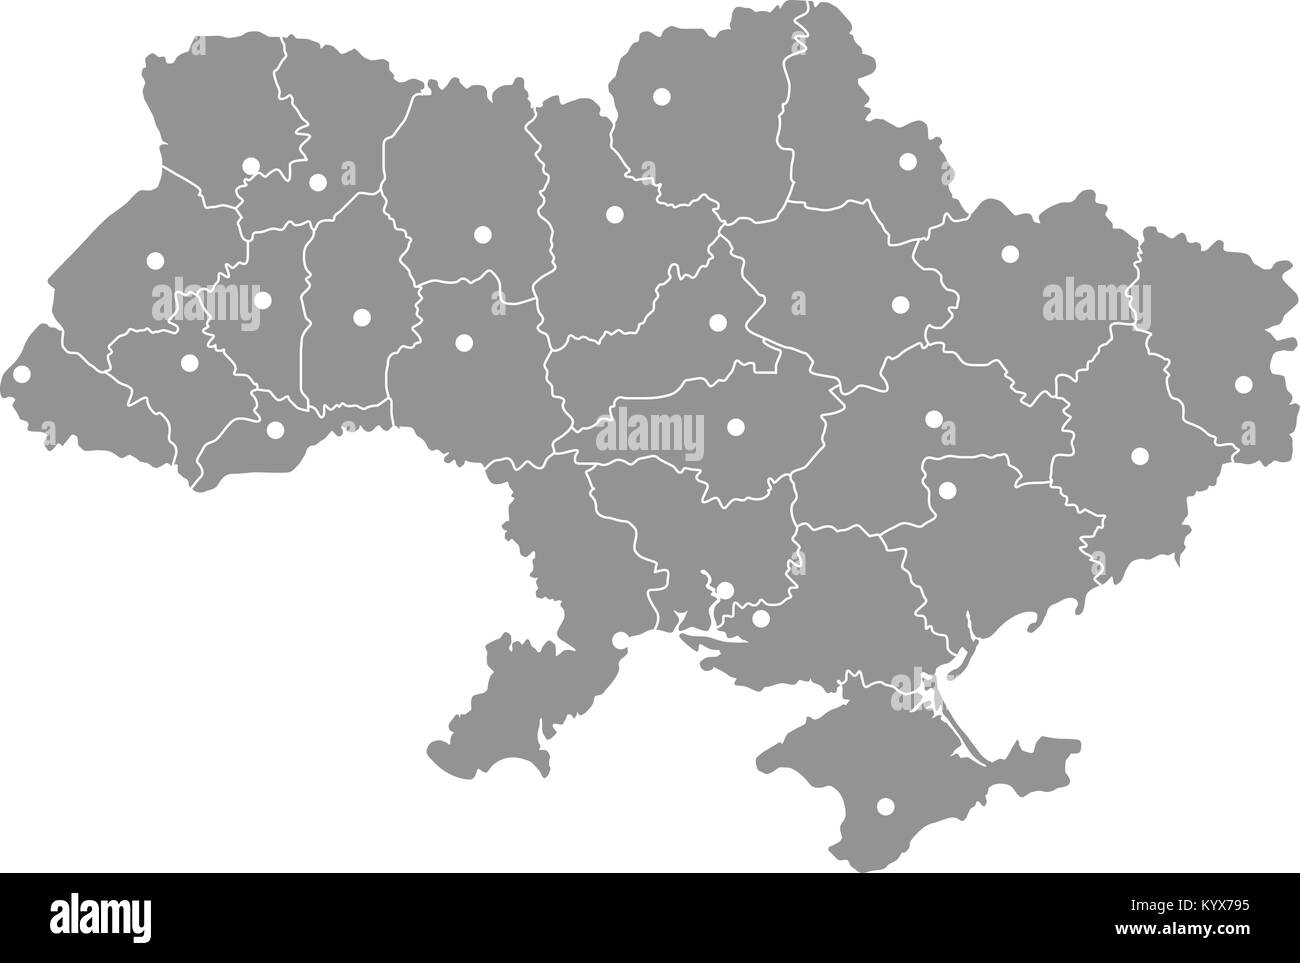 Karte von Ukraine Krim Halbinsel, Donezk und Lugansk Stock Vektor